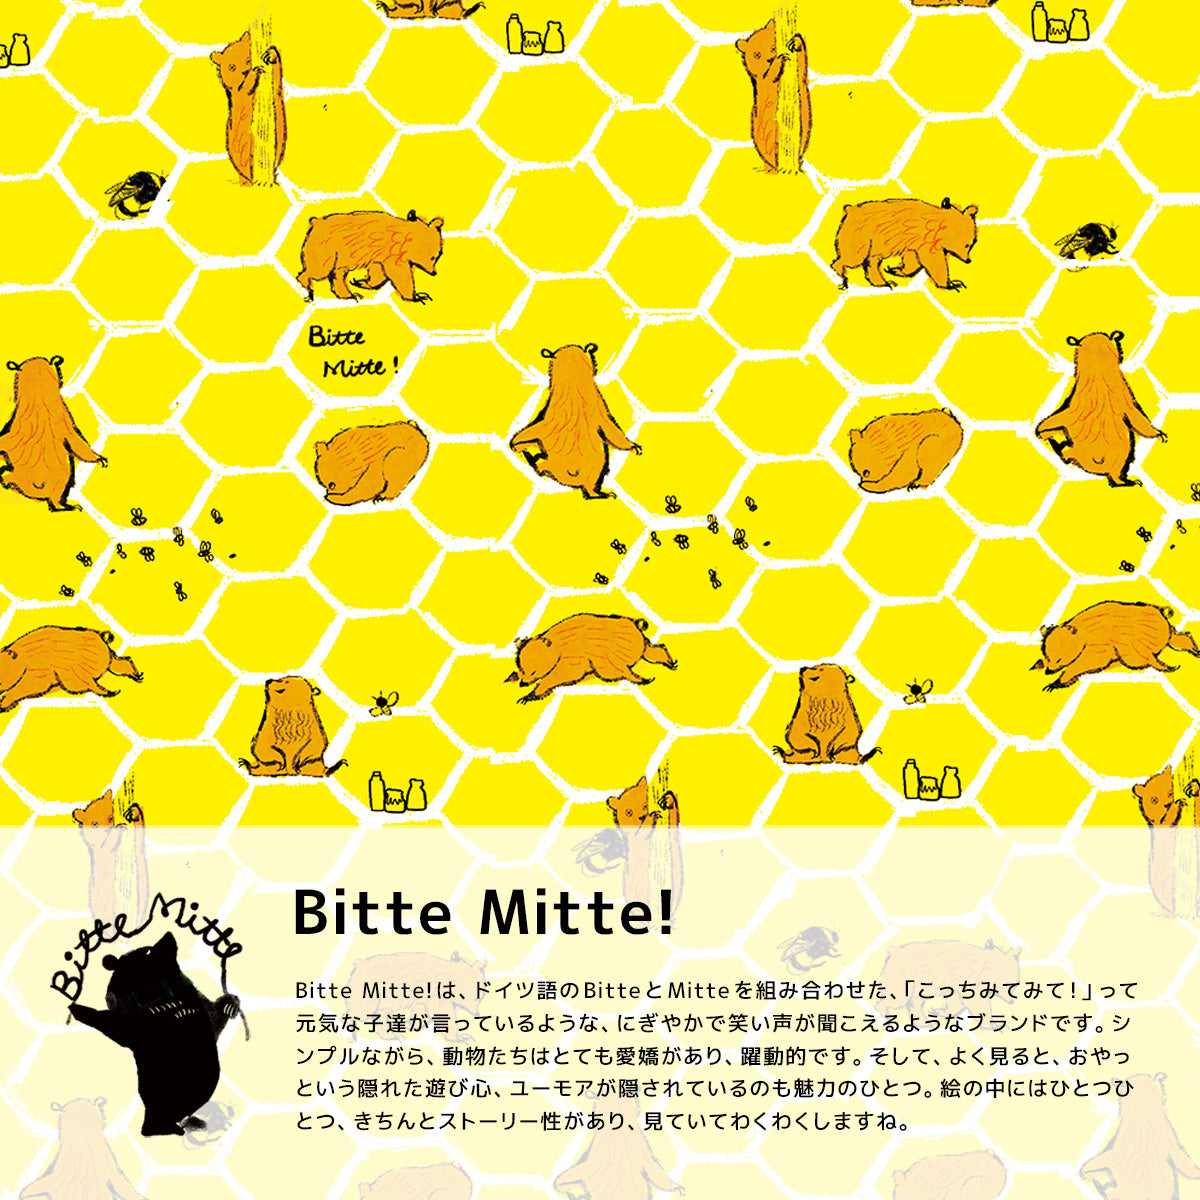 ももろデザイン、Bitte Mitte!のアートパネル